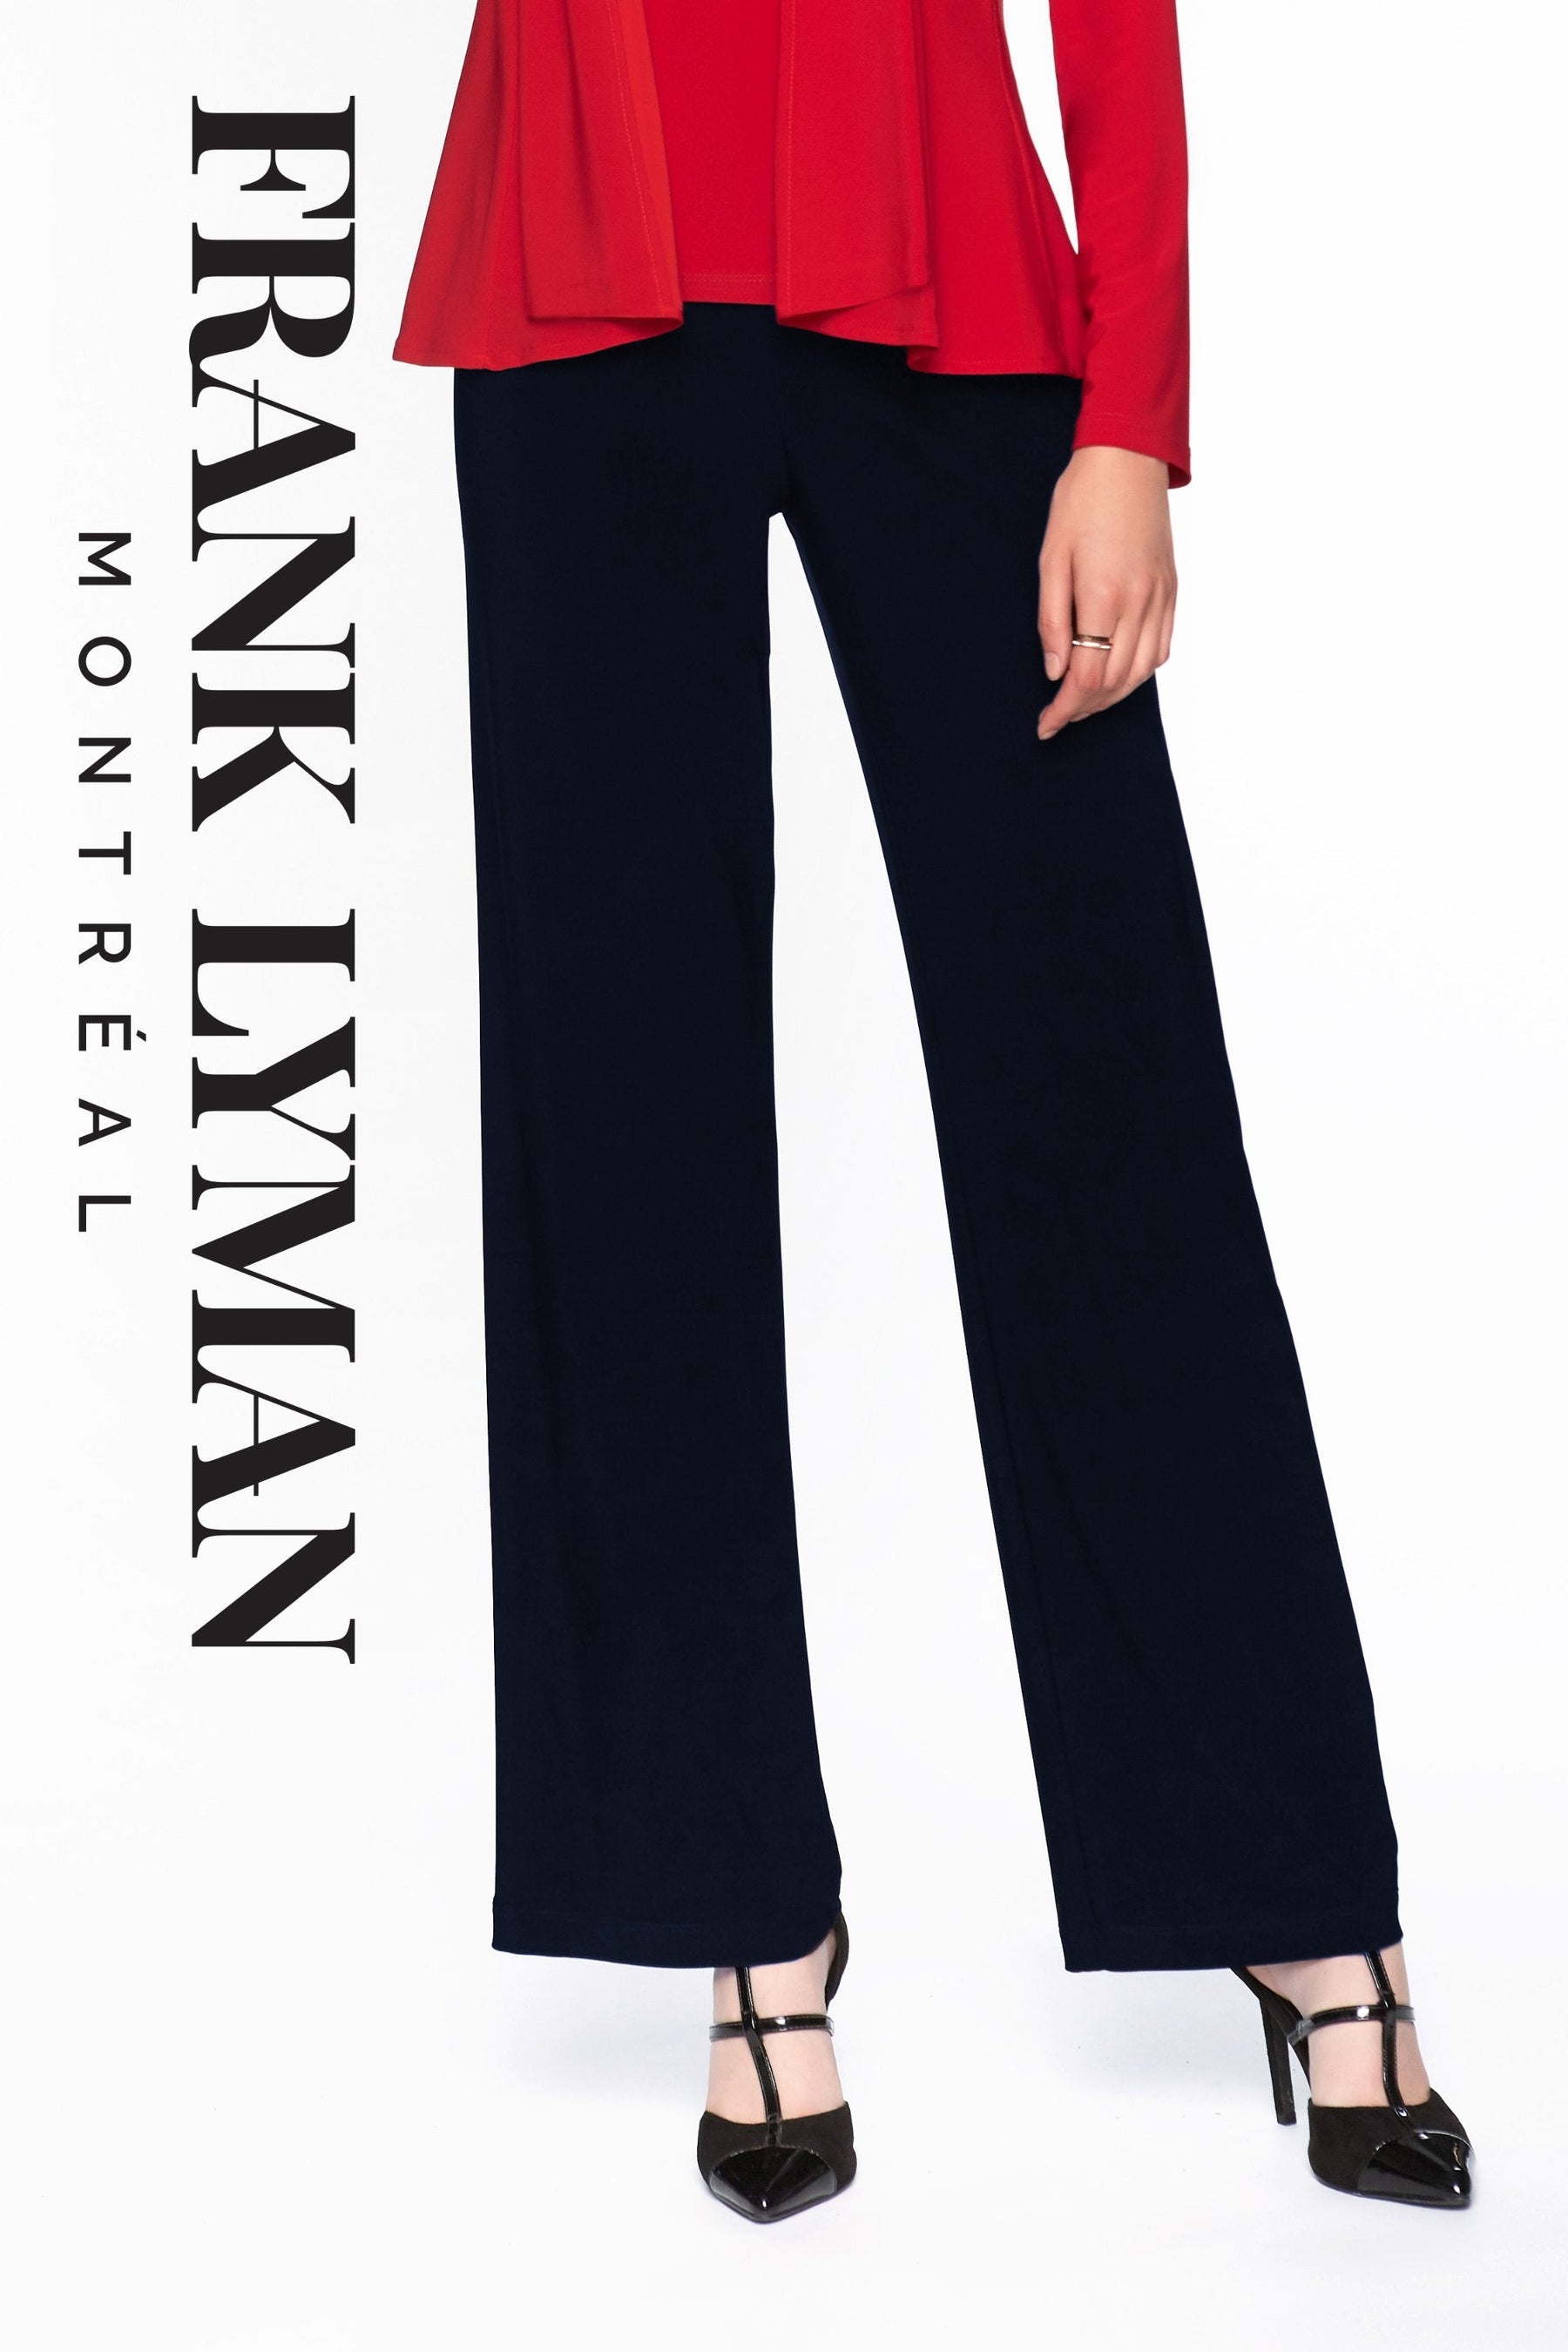 Pantalon en Knit Frank Lyman - 006 DNAVY - Boutique Vvög, référence en mode pour homme et femme